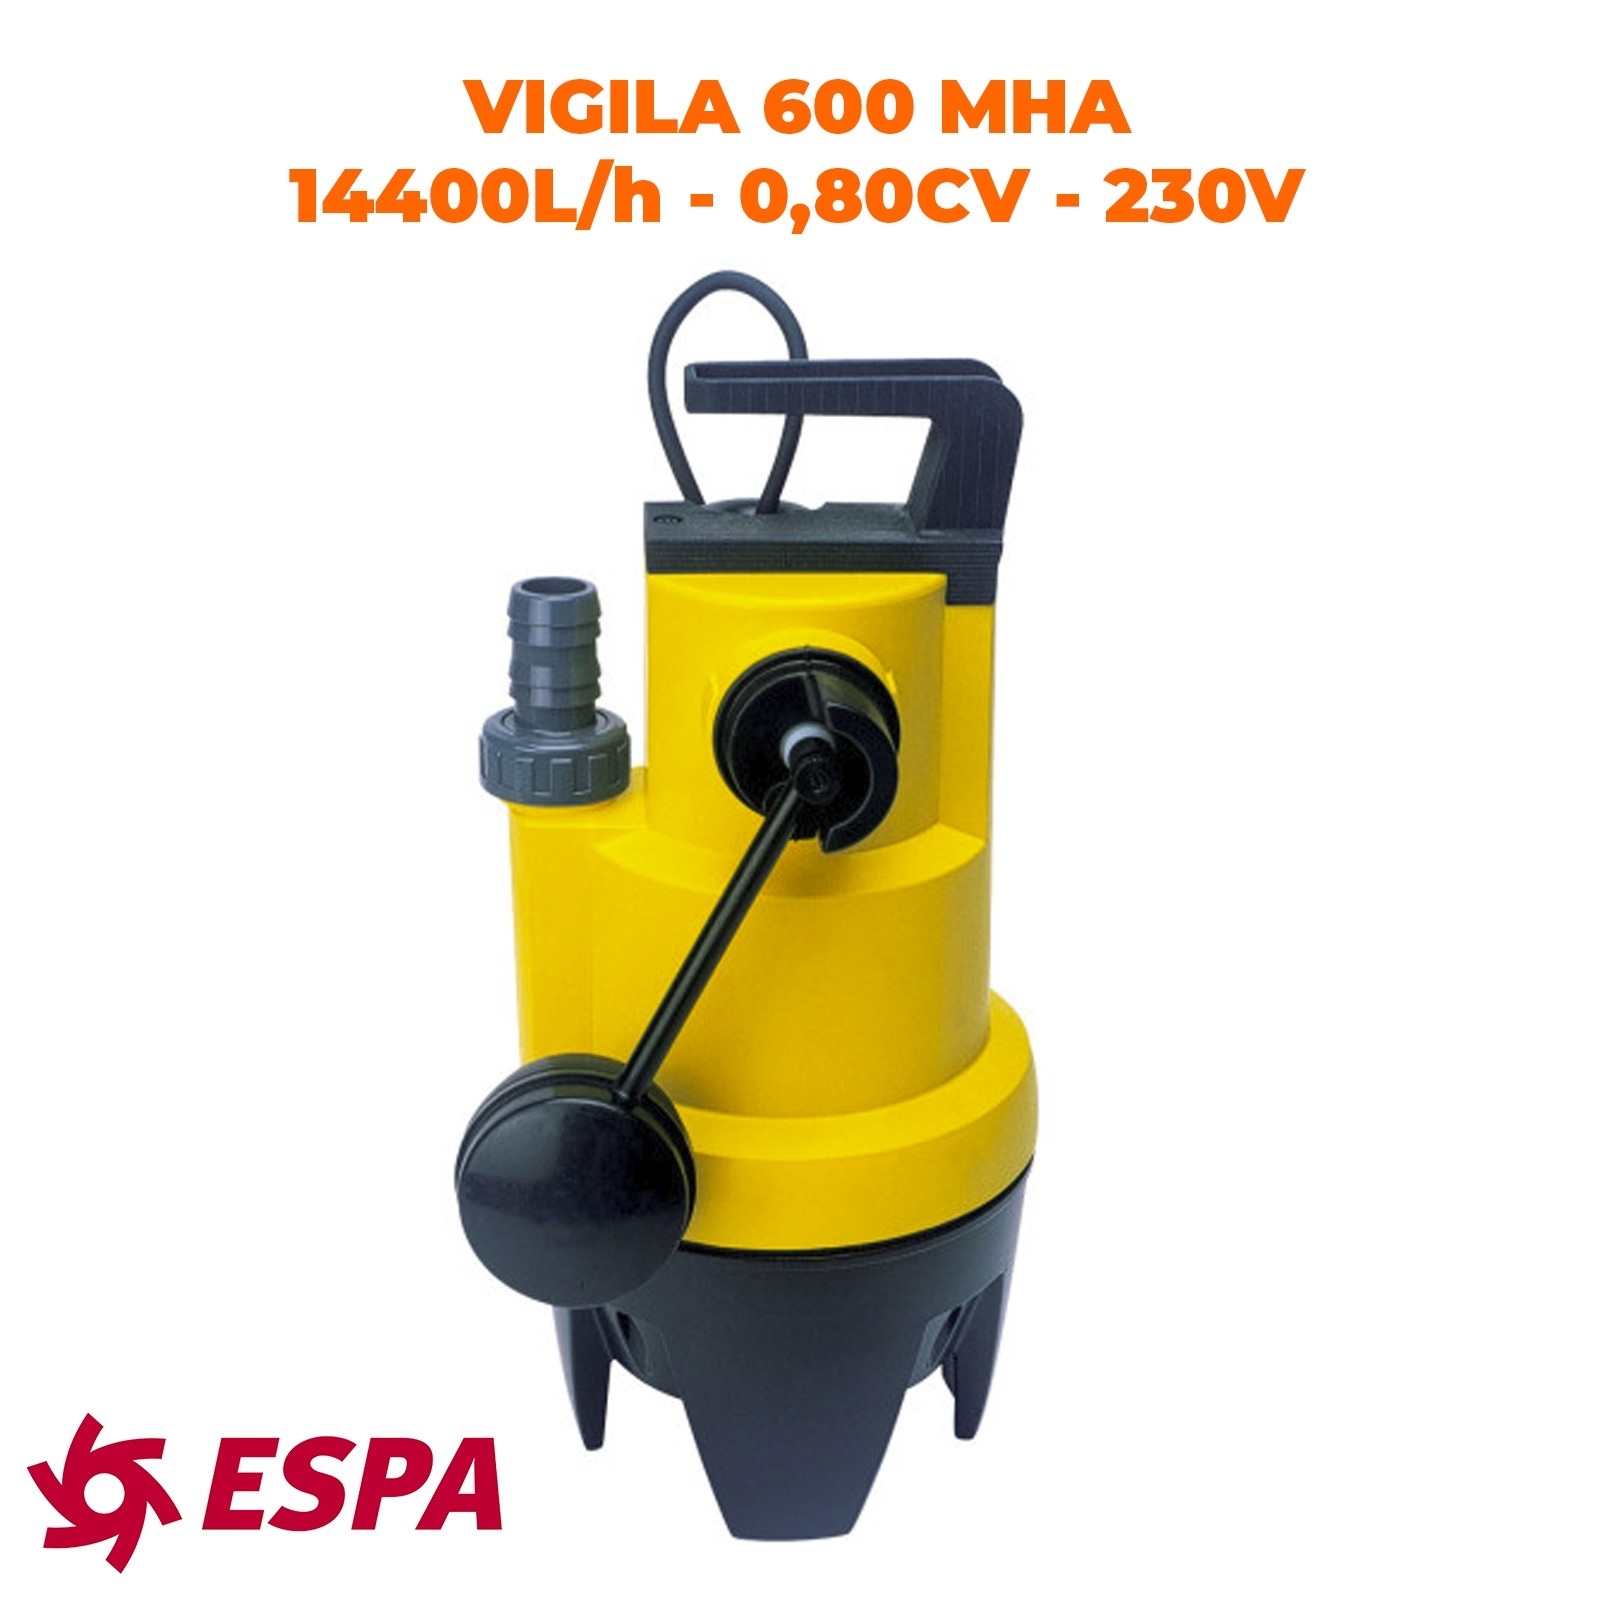 ESPA Pompe portable submersible pour les eaux usées VIGILEX 600 MHA - 14.400L/h - 7,7m max. - 230V